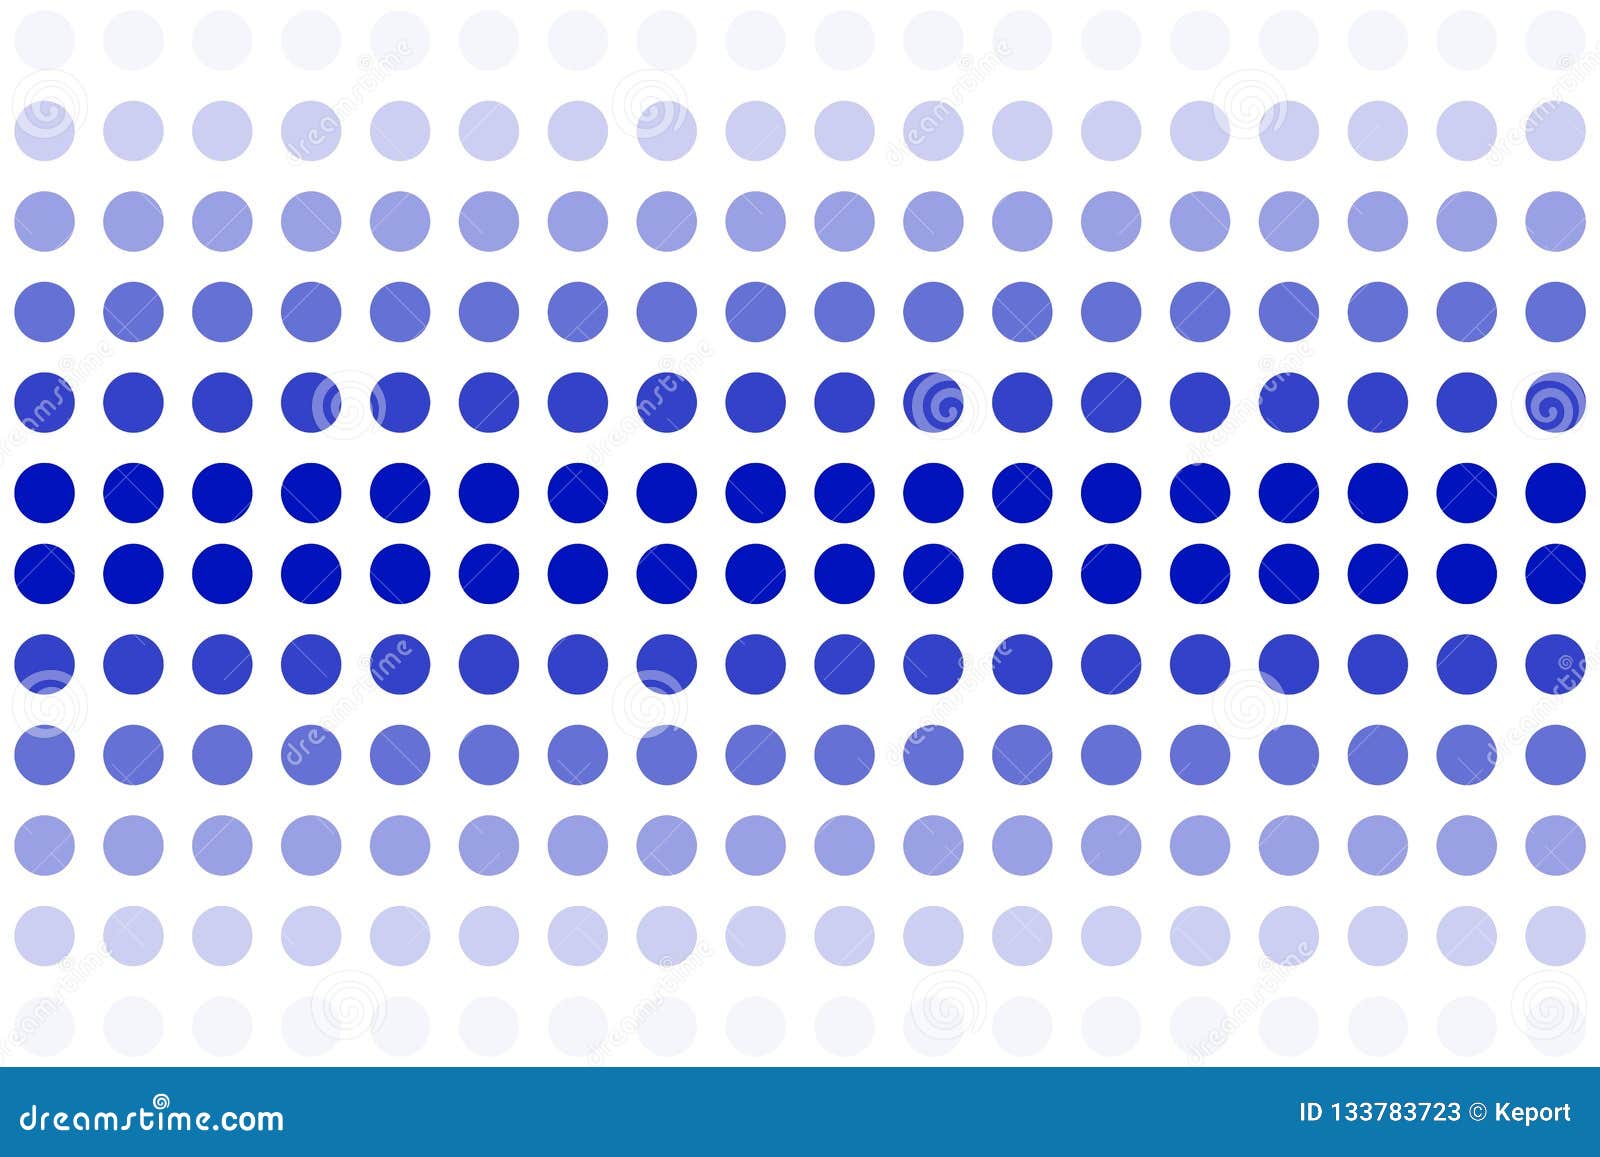 Hình nền chấm xoáy màu xanh dương với gradient sẽ mang đến cho bạn sự thư giãn và yên bình. Bạn có thể sử dụng hình ảnh này làm hình nền cho điện thoại hoặc máy tính của mình. Hãy xem hình ảnh liên quan để cảm nhận được vẻ đẹp trực quan của nó.